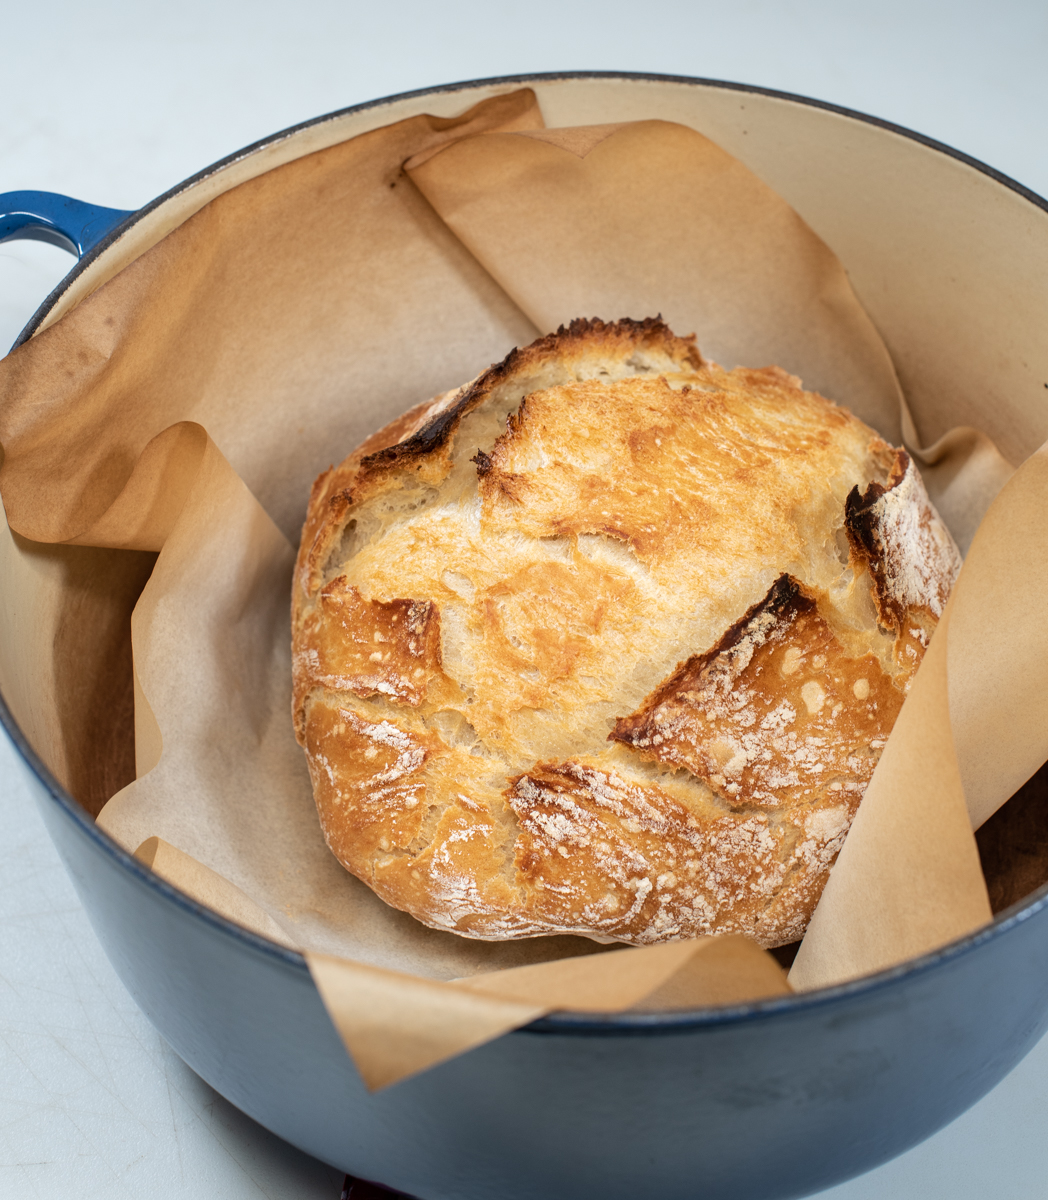 Dutch Oven Bread (No Knead) • Longbourn Farm